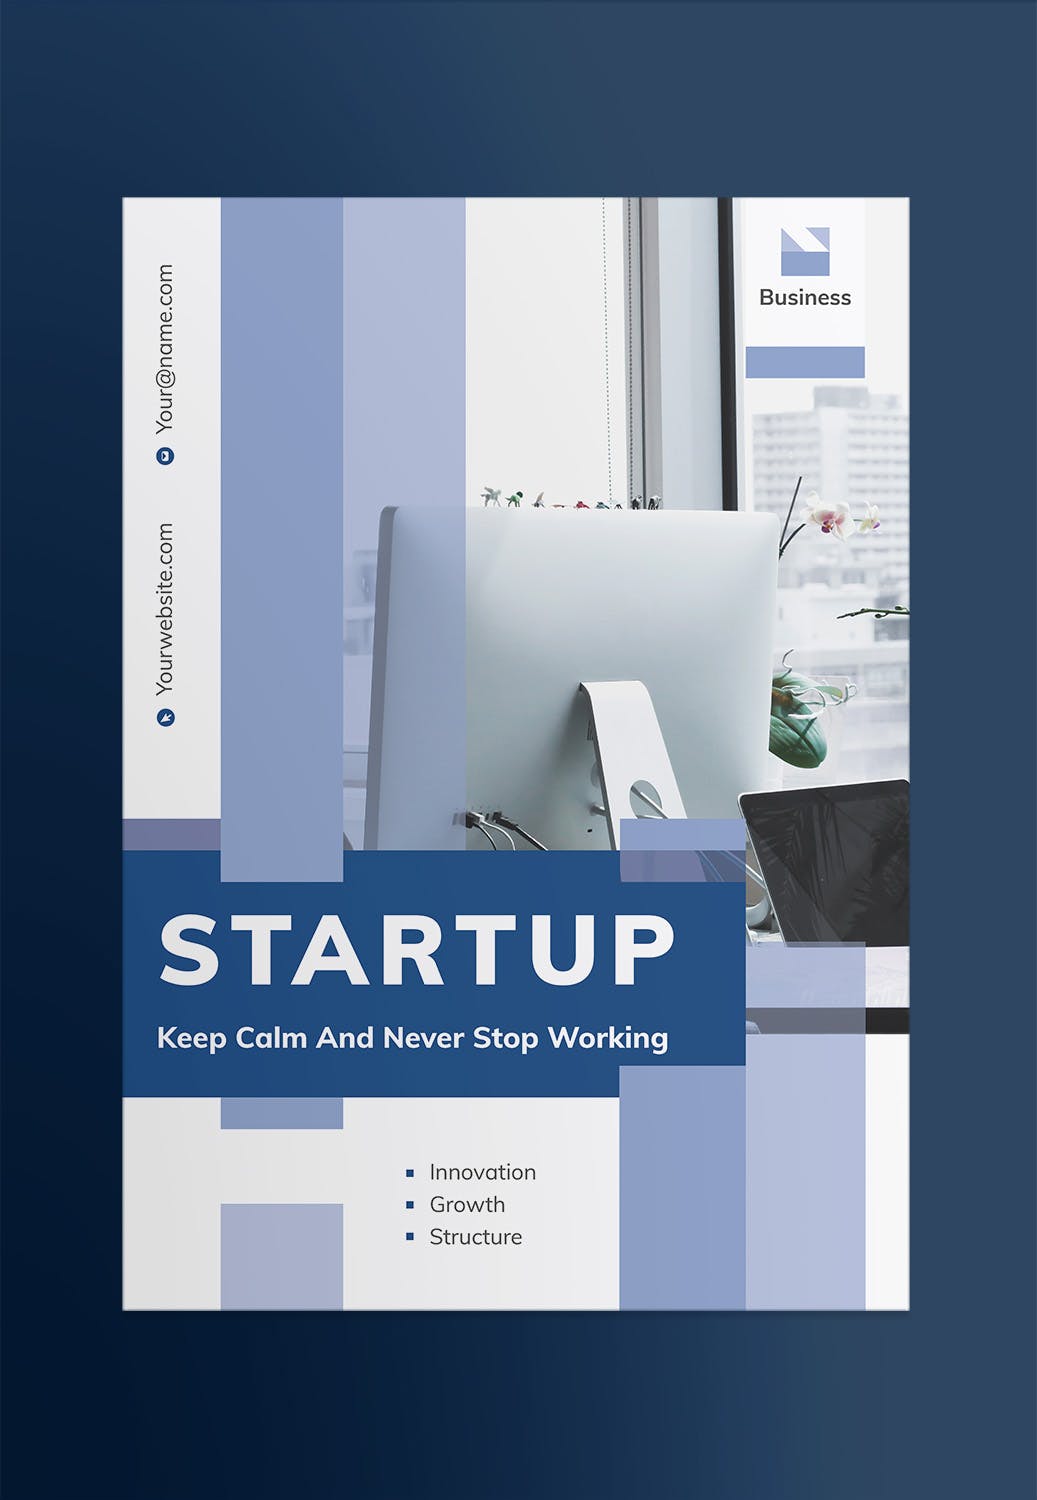 创业互联网项目简介宣传海报PSD素材素材库精选模板 Startup Poster插图(1)